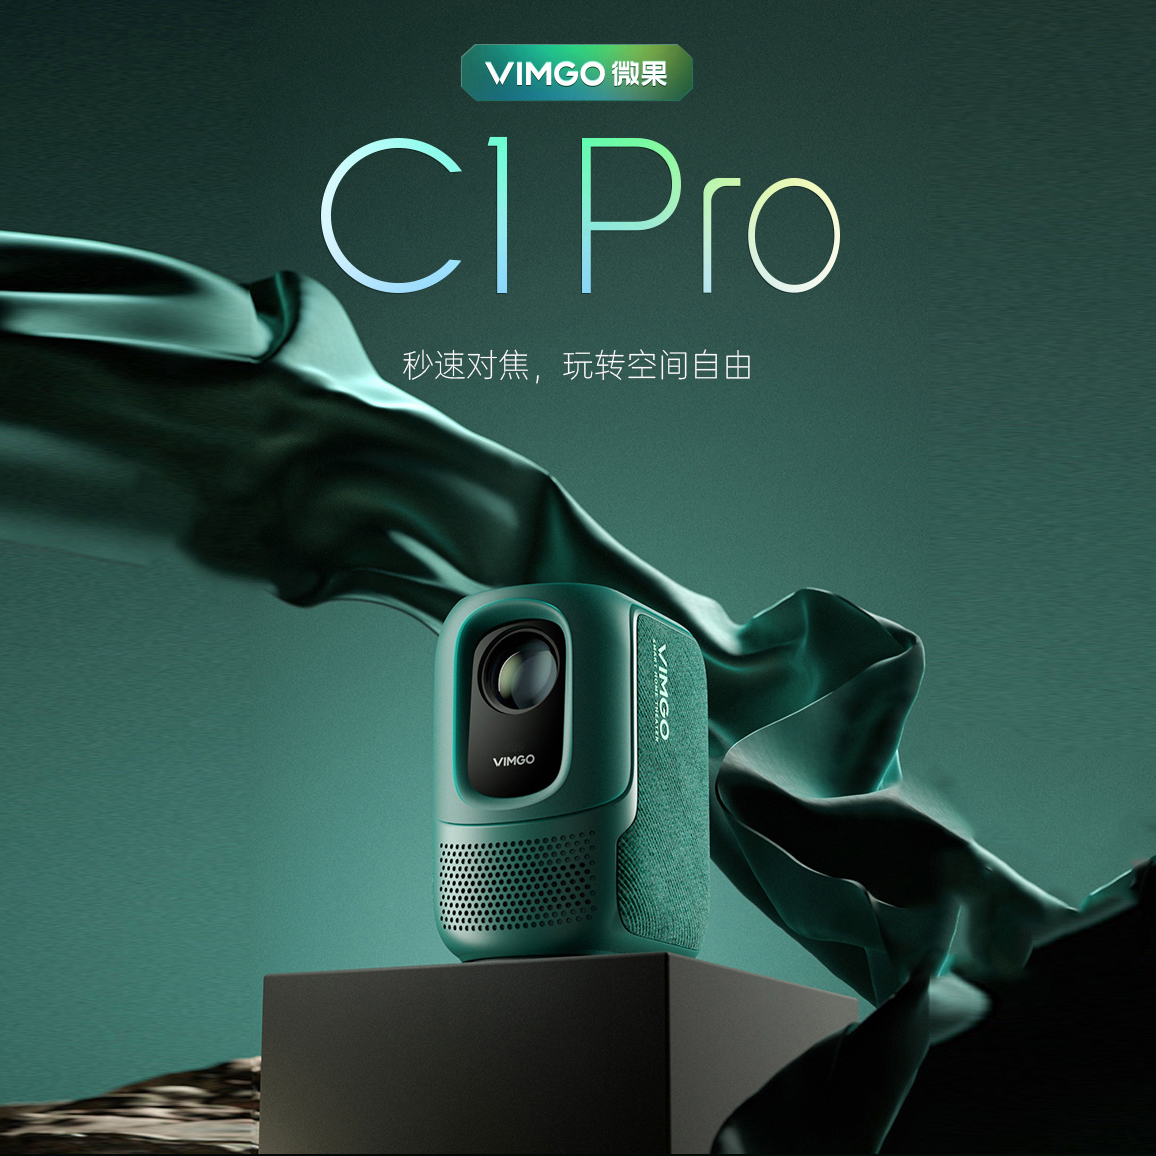 【2022新款现货】坚果微果C1 Pro投影仪 家用1080P超高清 墙投小型便携家庭影院智能投影机